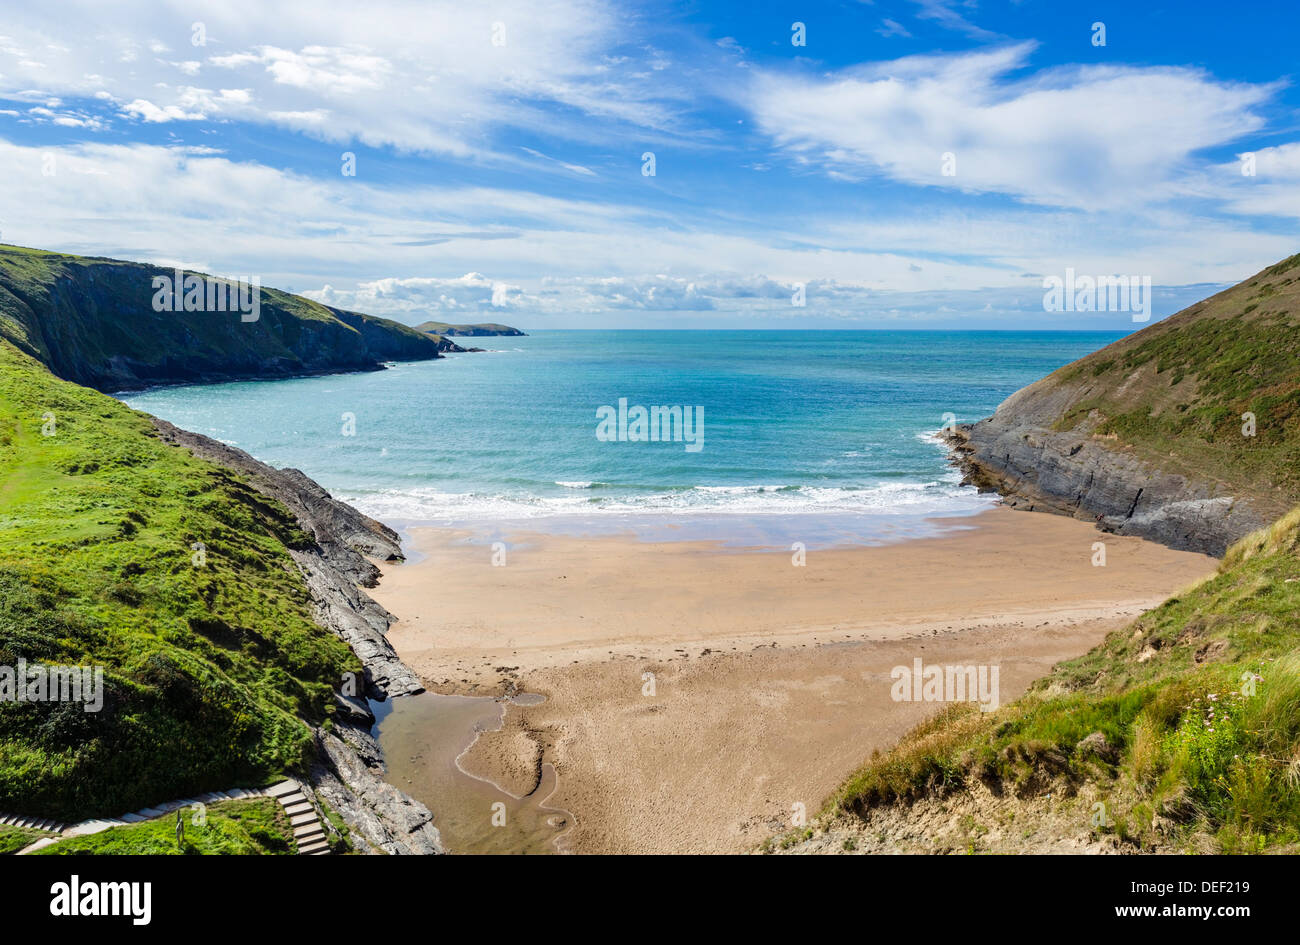 La plage à Mwnt, près de Cardigan, Ceredigion, pays de Galles, Royaume-Uni Banque D'Images